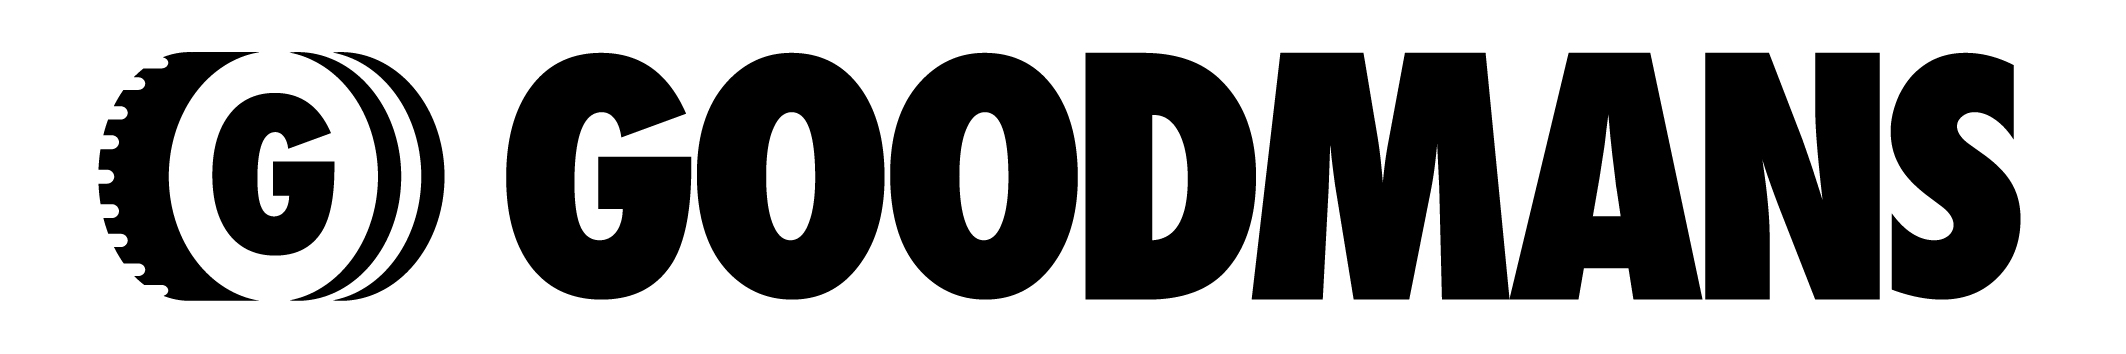 [Image] Goodmans' logo